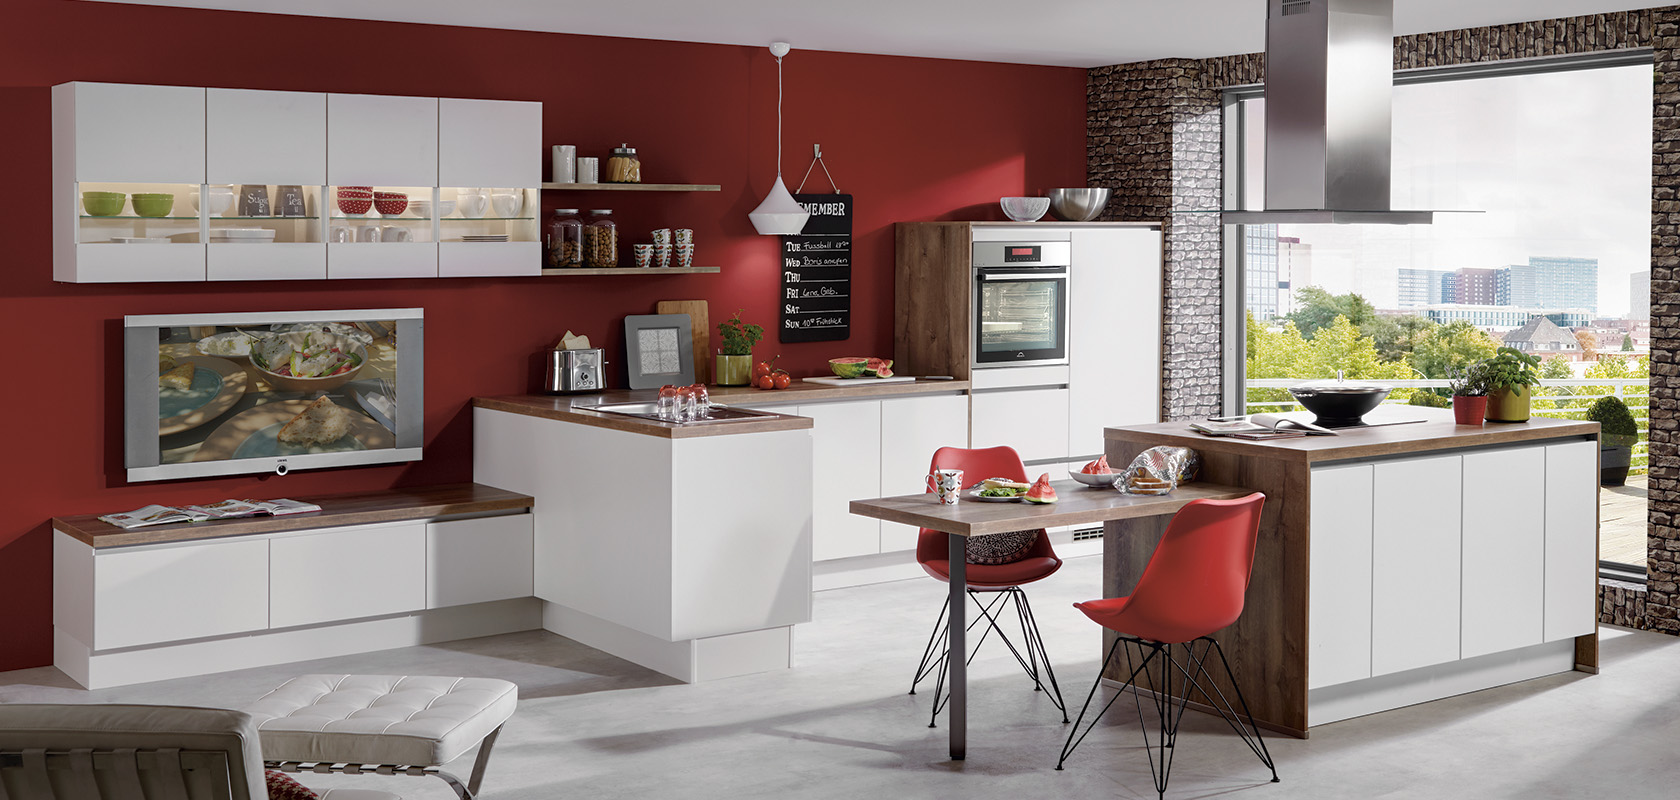 Intérieur de cuisine moderne avec des armoires modulaires blanches, des murs d'accent rouge, des éléments en brique, des appareils élégants et un coin repas confortable avec une vue pittoresque par la fenêtre.